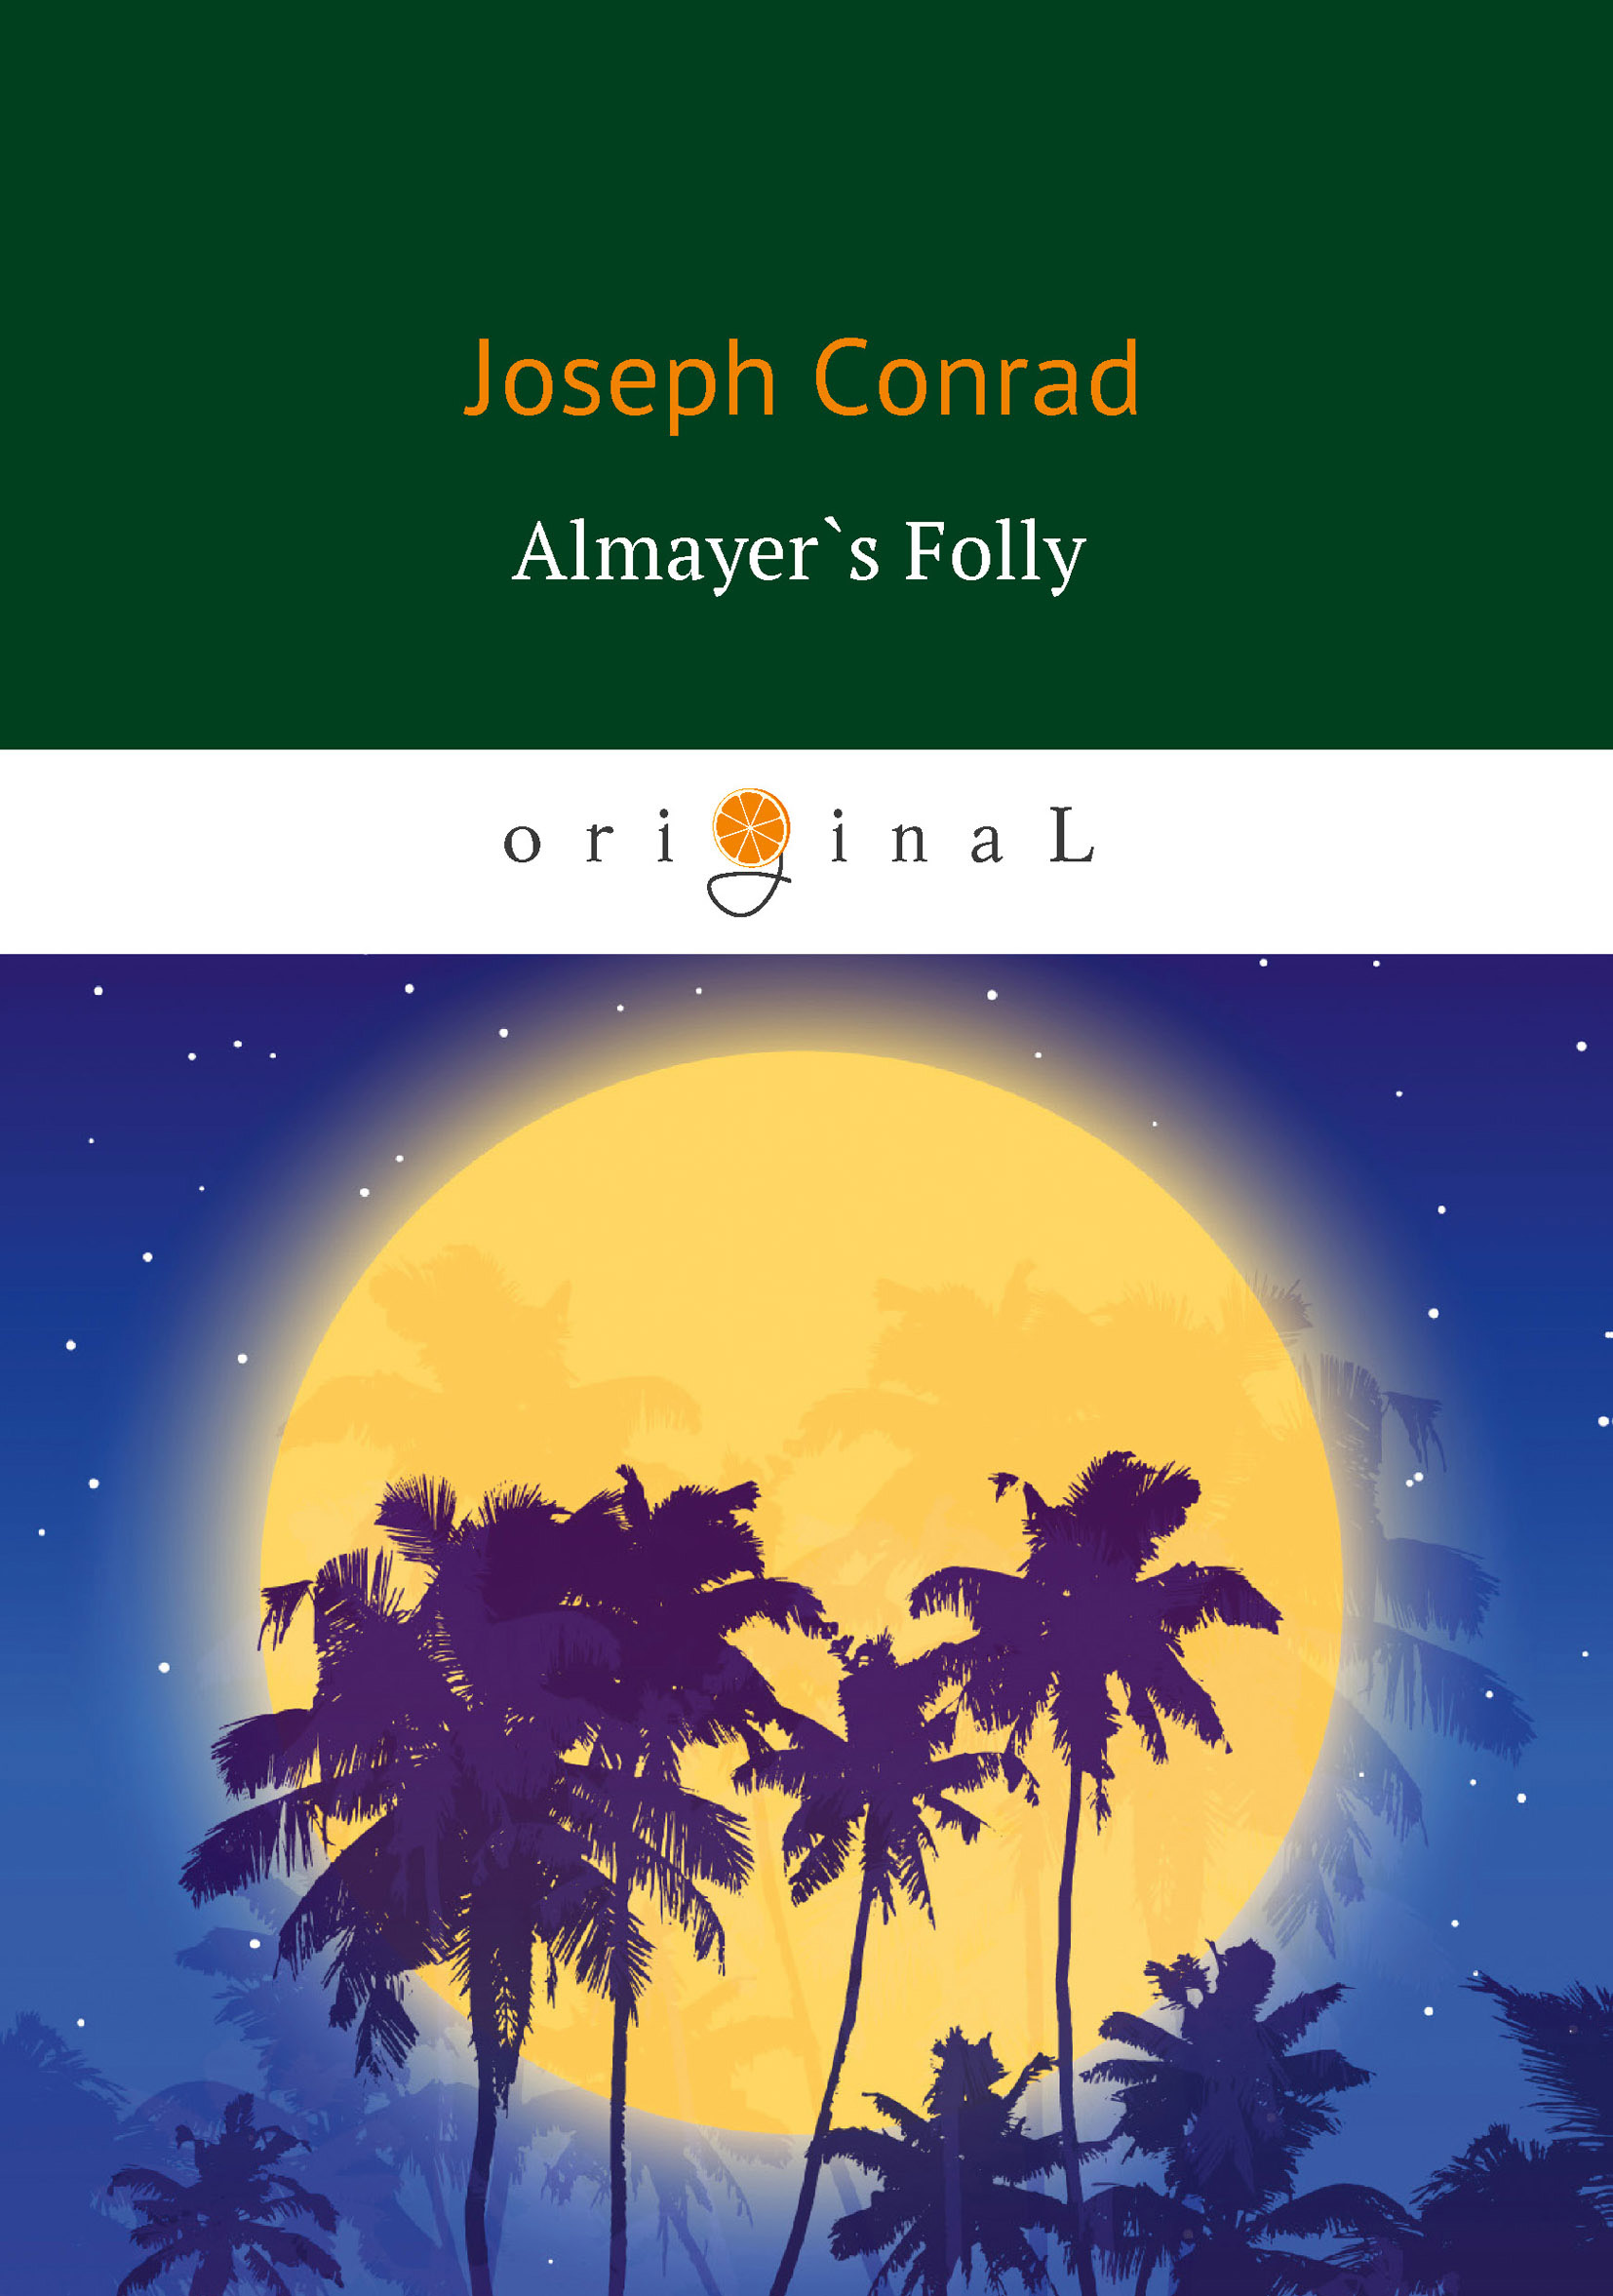 Книга Almayer's Folly из серии , созданная Джозеф Конрад, может относится к жанру Зарубежная классика, Литература 19 века. Стоимость электронной книги Almayer's Folly с идентификатором 31736433 составляет 199.00 руб.